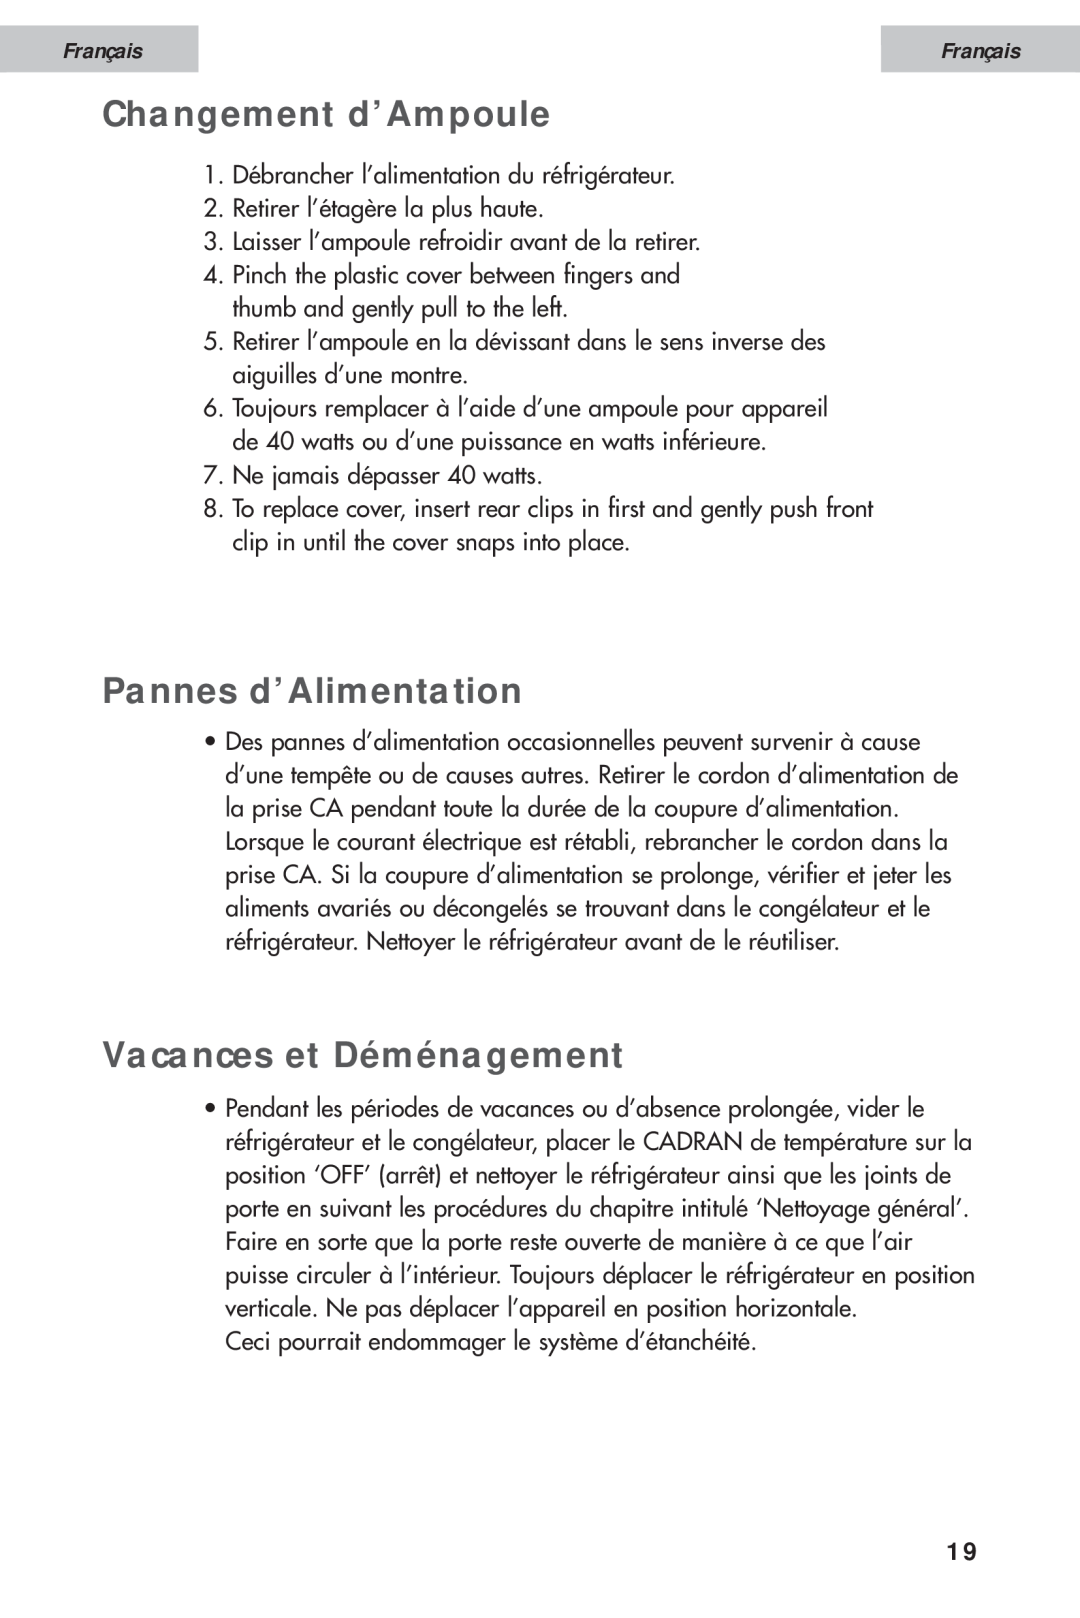 Haier HDE11WNA, HDE10WNA user manual Changement d’Ampoule, Pannes d’Alimentation, Vacances et Déménagement, Français 